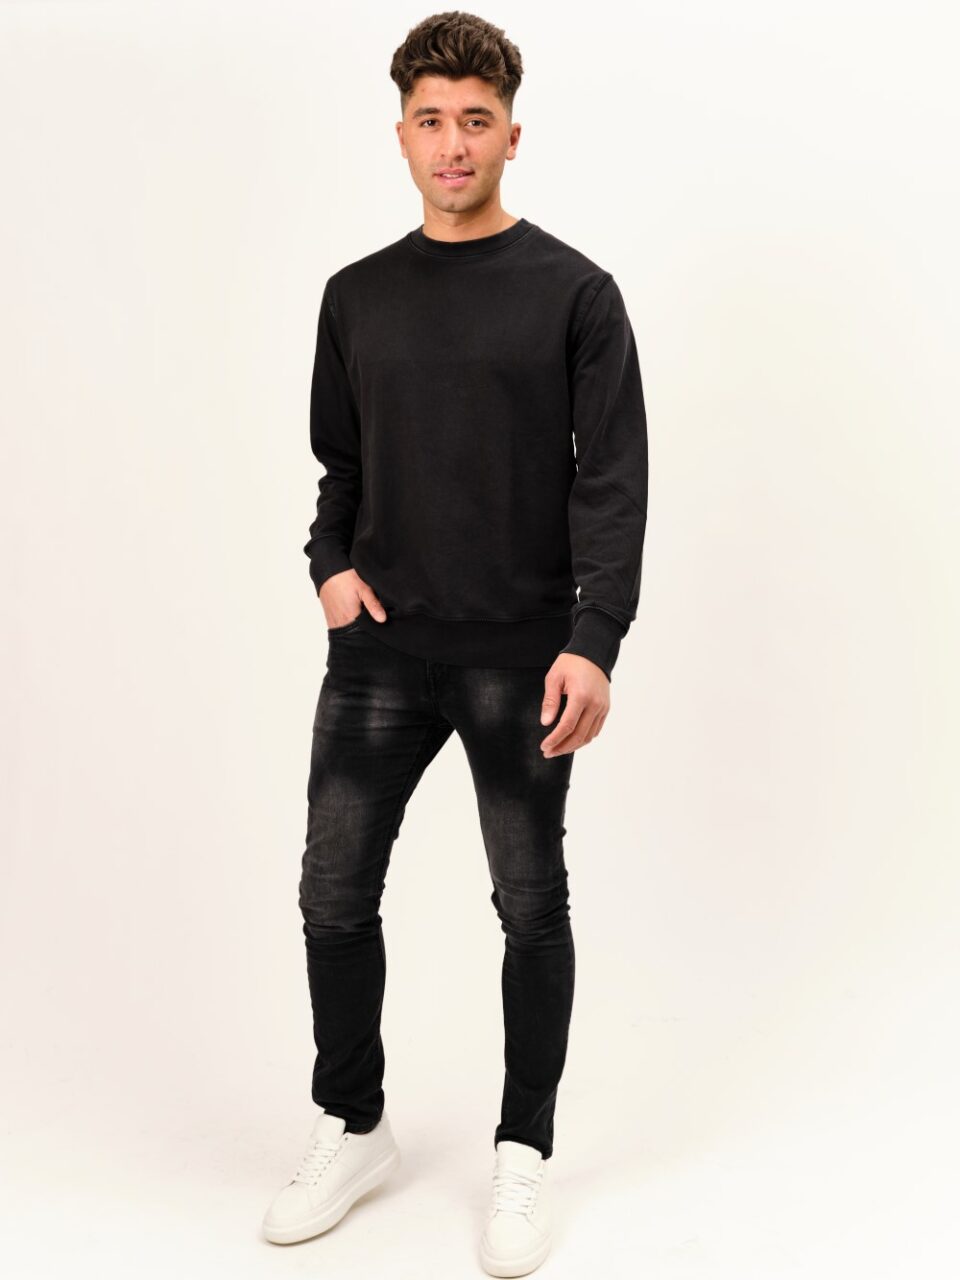 STROM Clothing_Basics_Washed Black Sweater